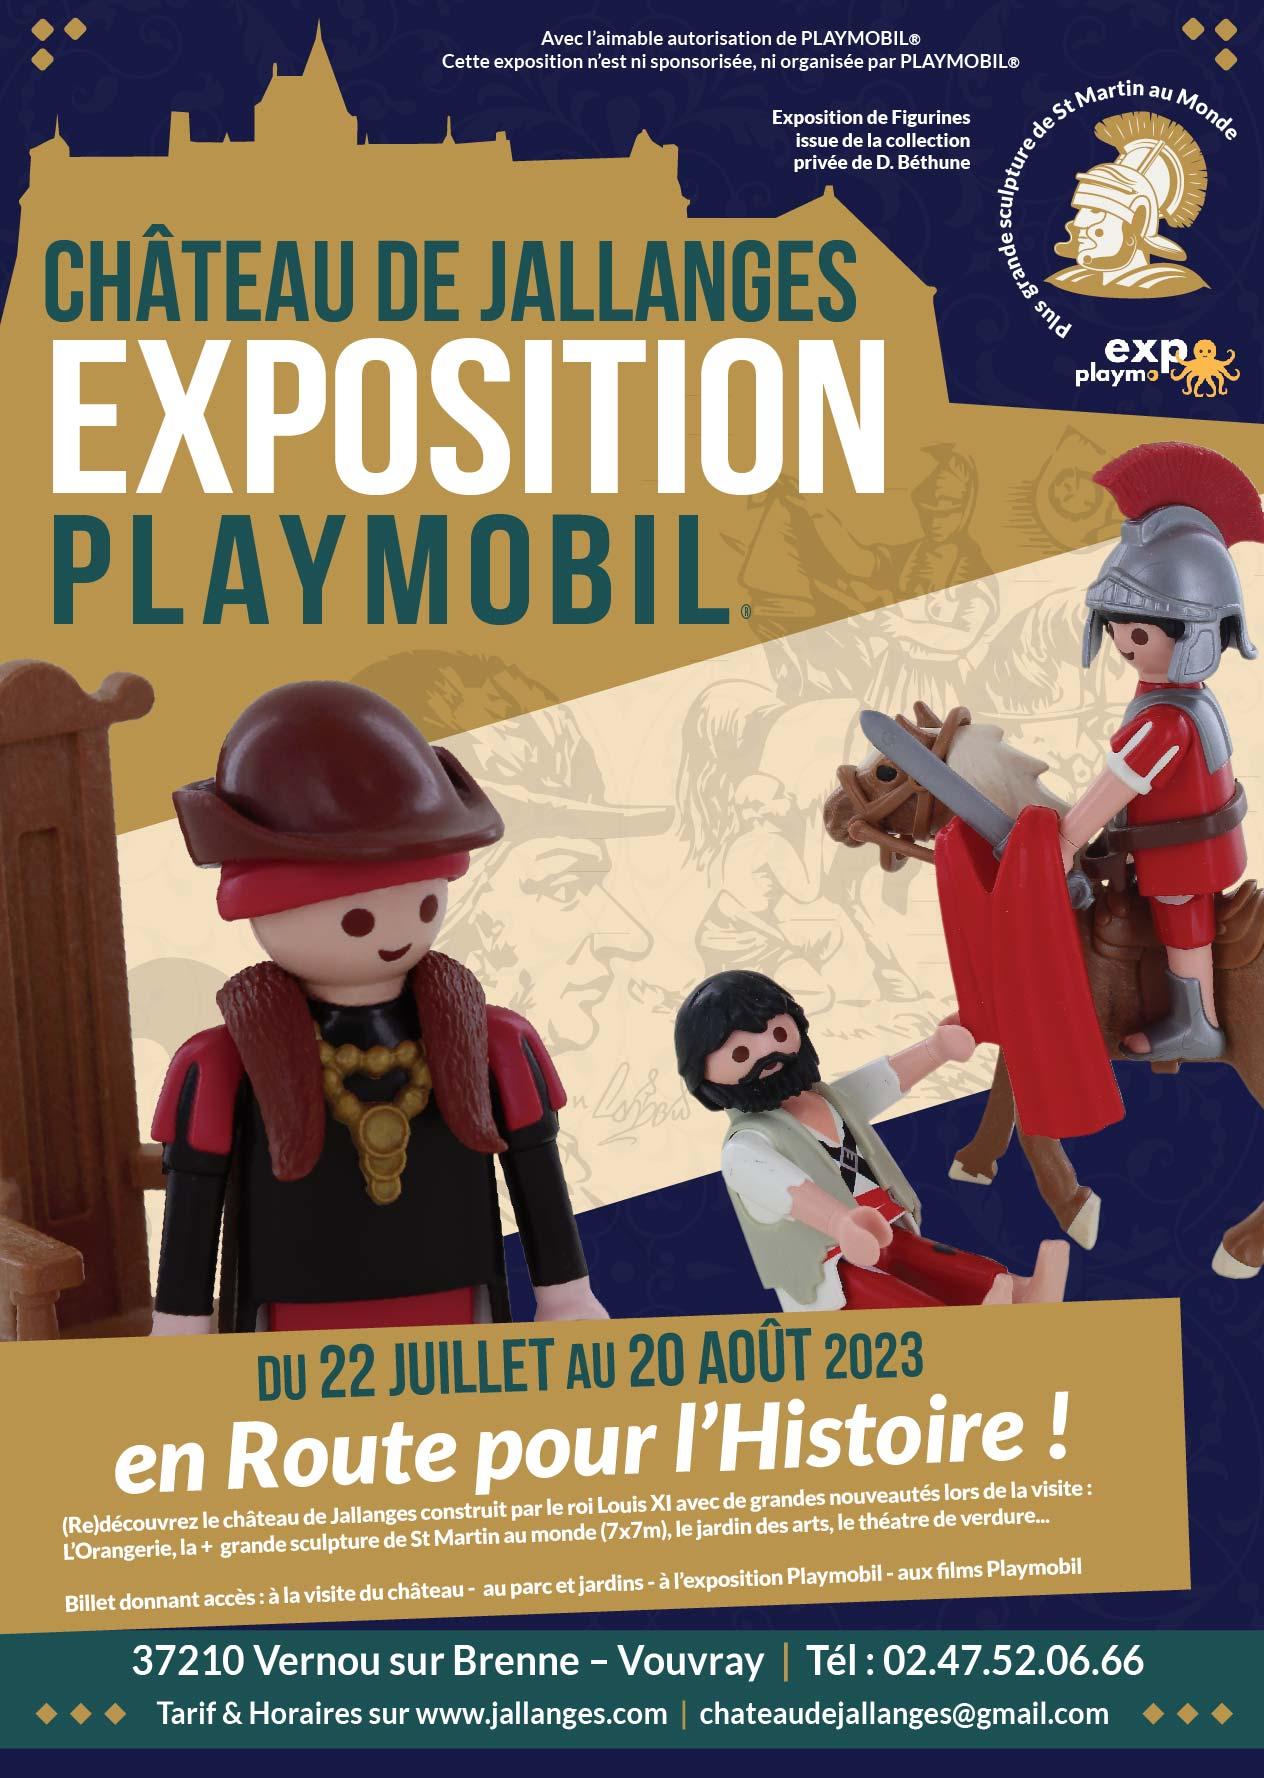 Affiche exposition playmobil jallanges ete 2023 dominique bethune